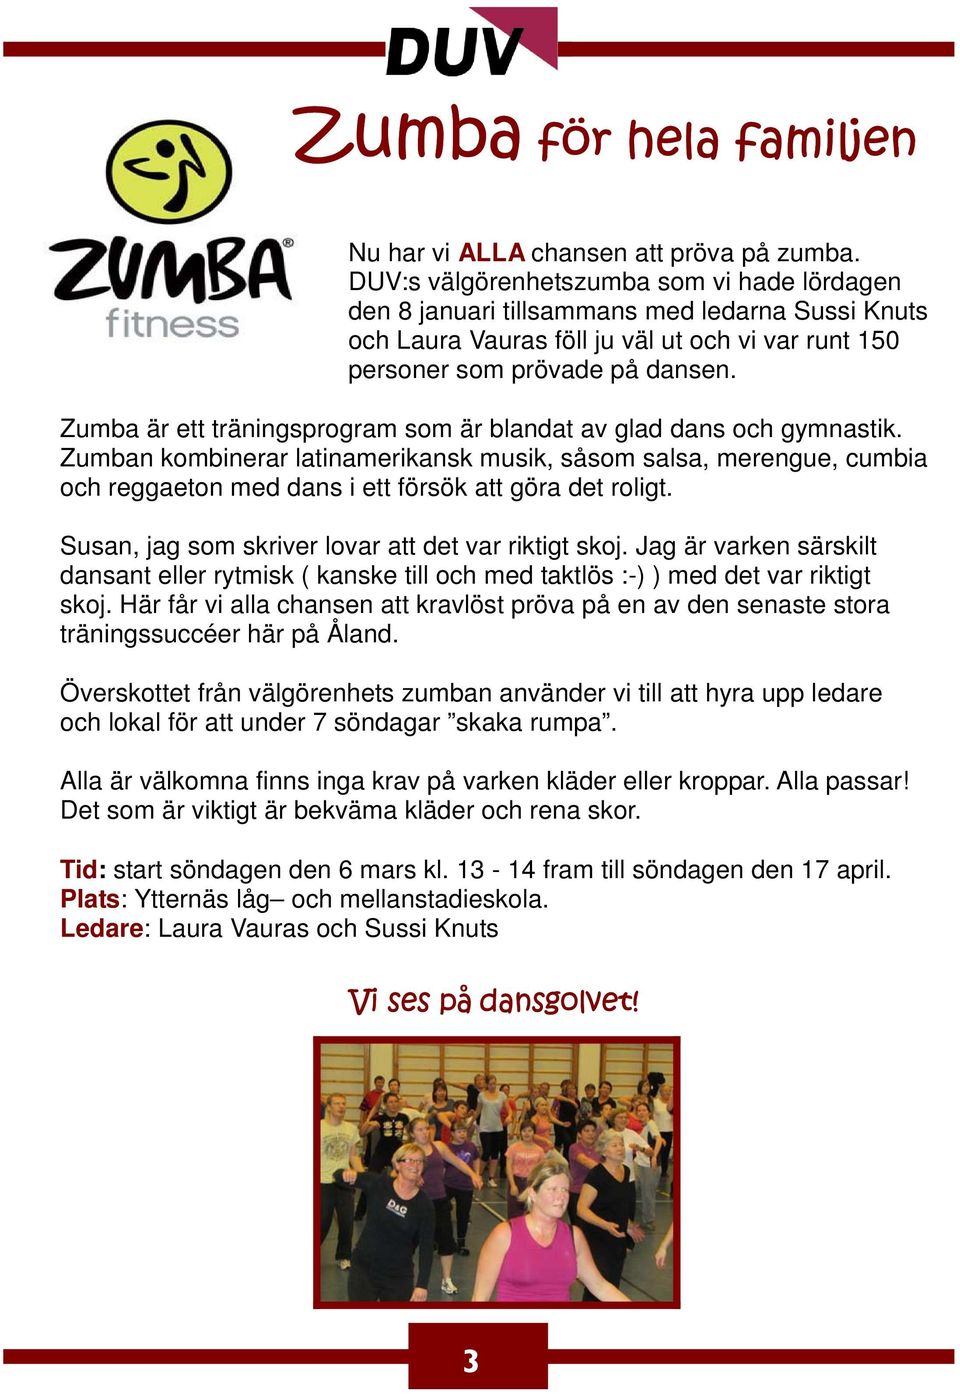 Zumba är ett träningsprogram som är blandat av glad dans och gymnastik. Zumban kombinerar latinamerikansk musik, såsom salsa, merengue, cumbia och reggaeton med dans i ett försök att göra det roligt.